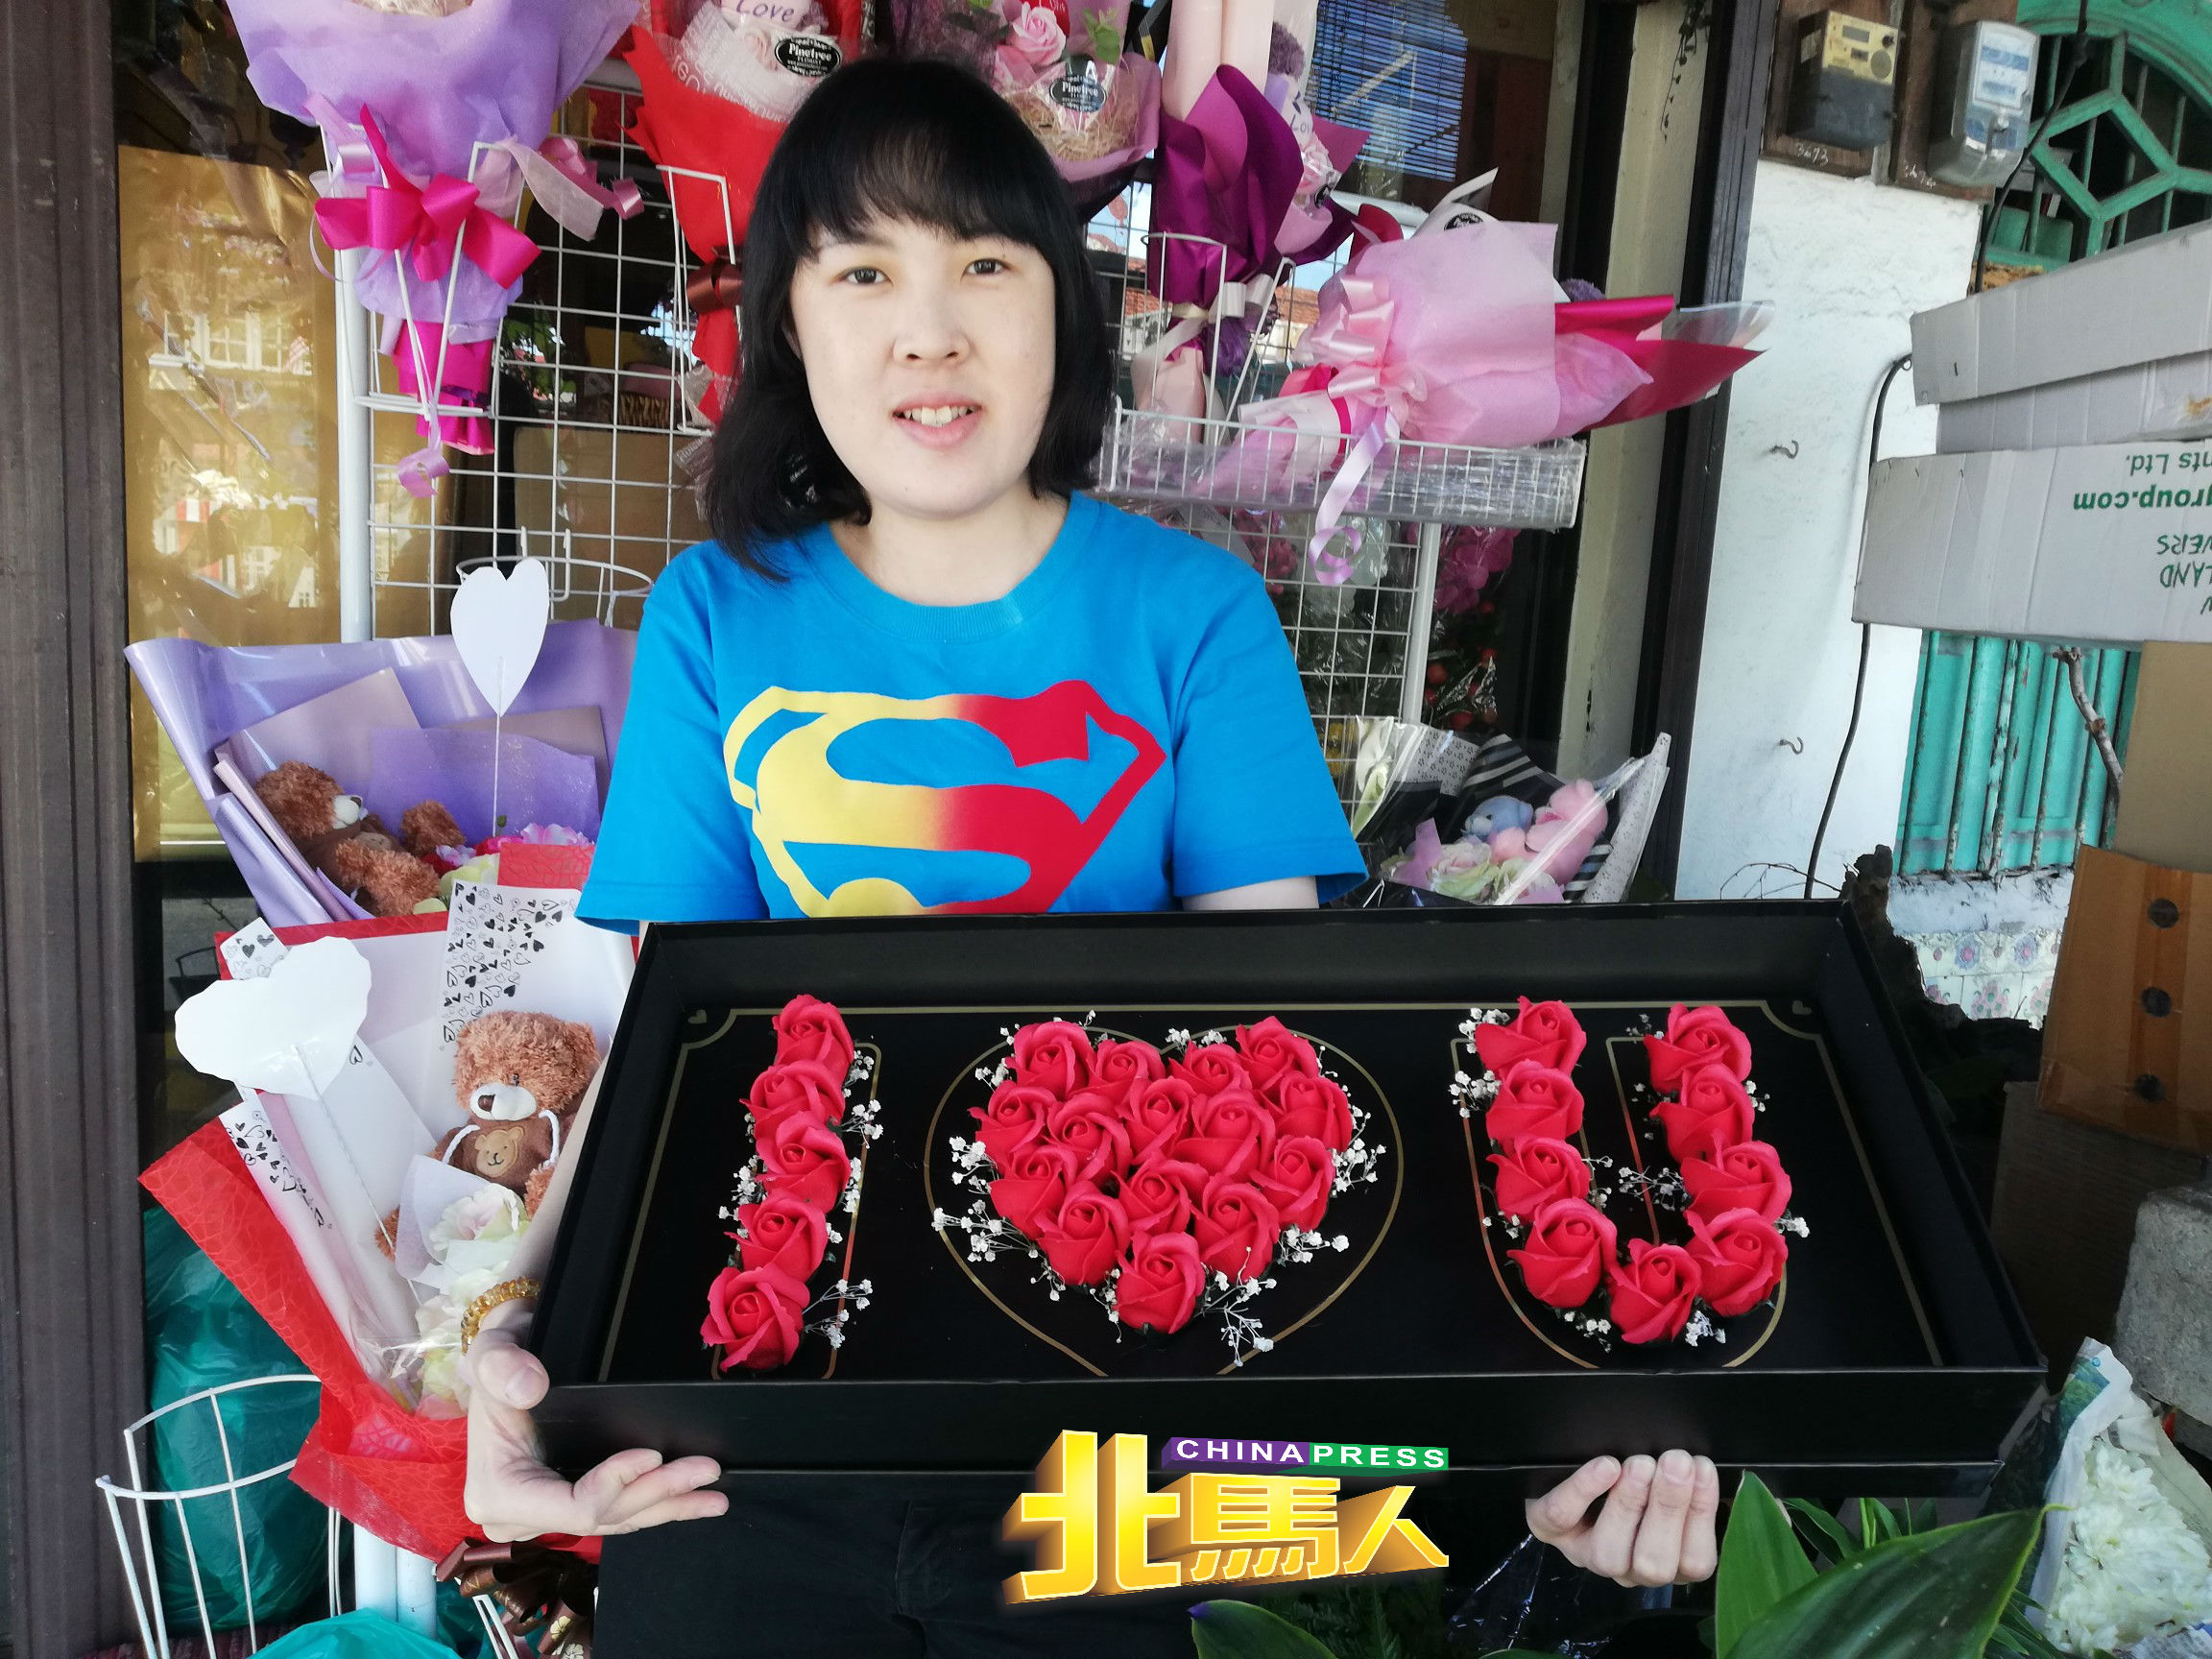 陈依凌展示排成“我爱你”字眼的肥皂花。